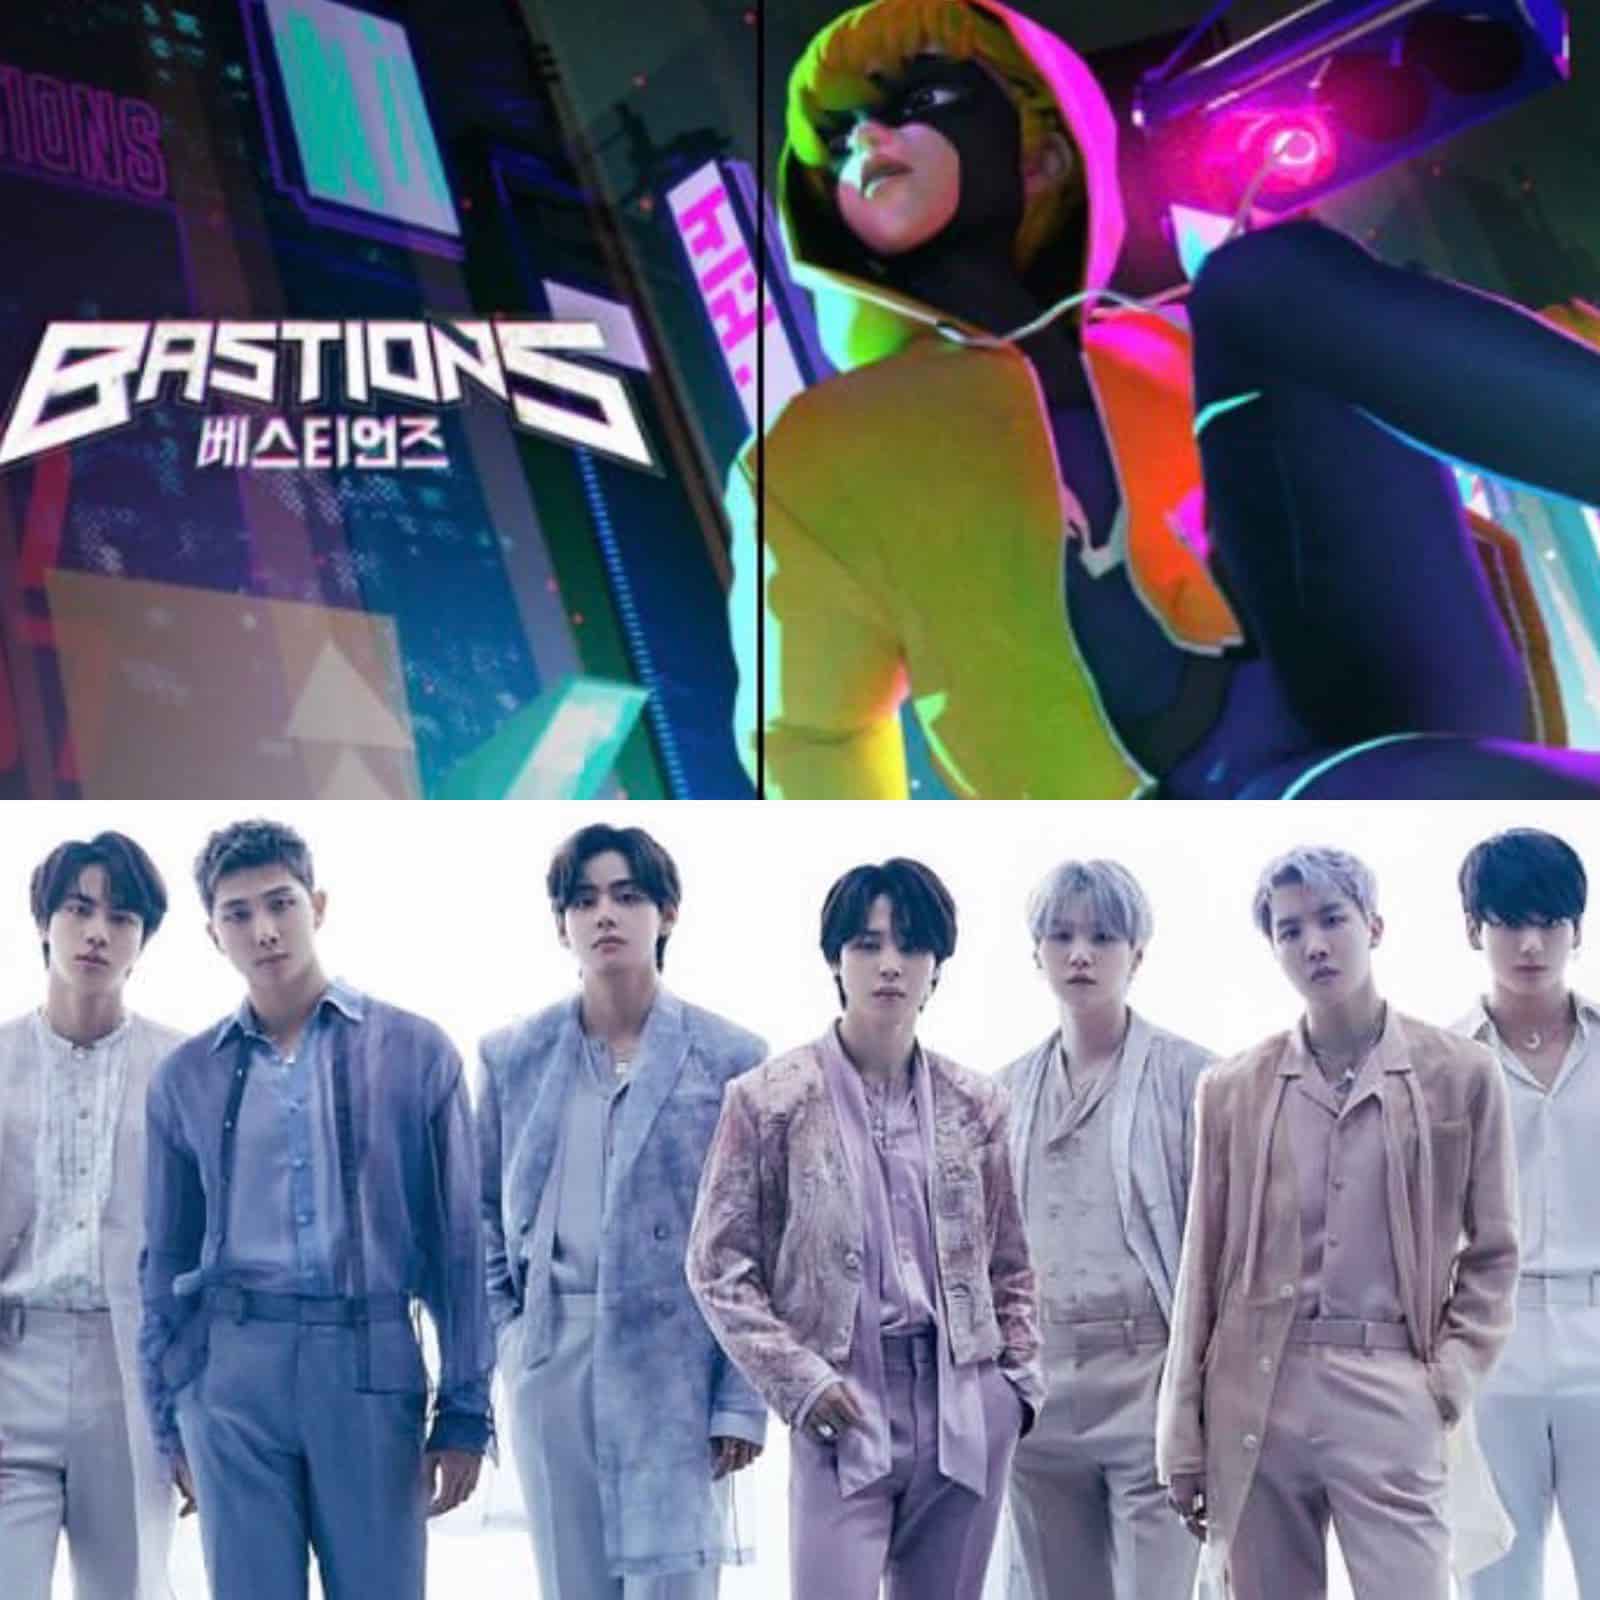 Lirik dan Terjemahan Lagu The Planet - BTS! Lagu OST Animasi BASTIONS